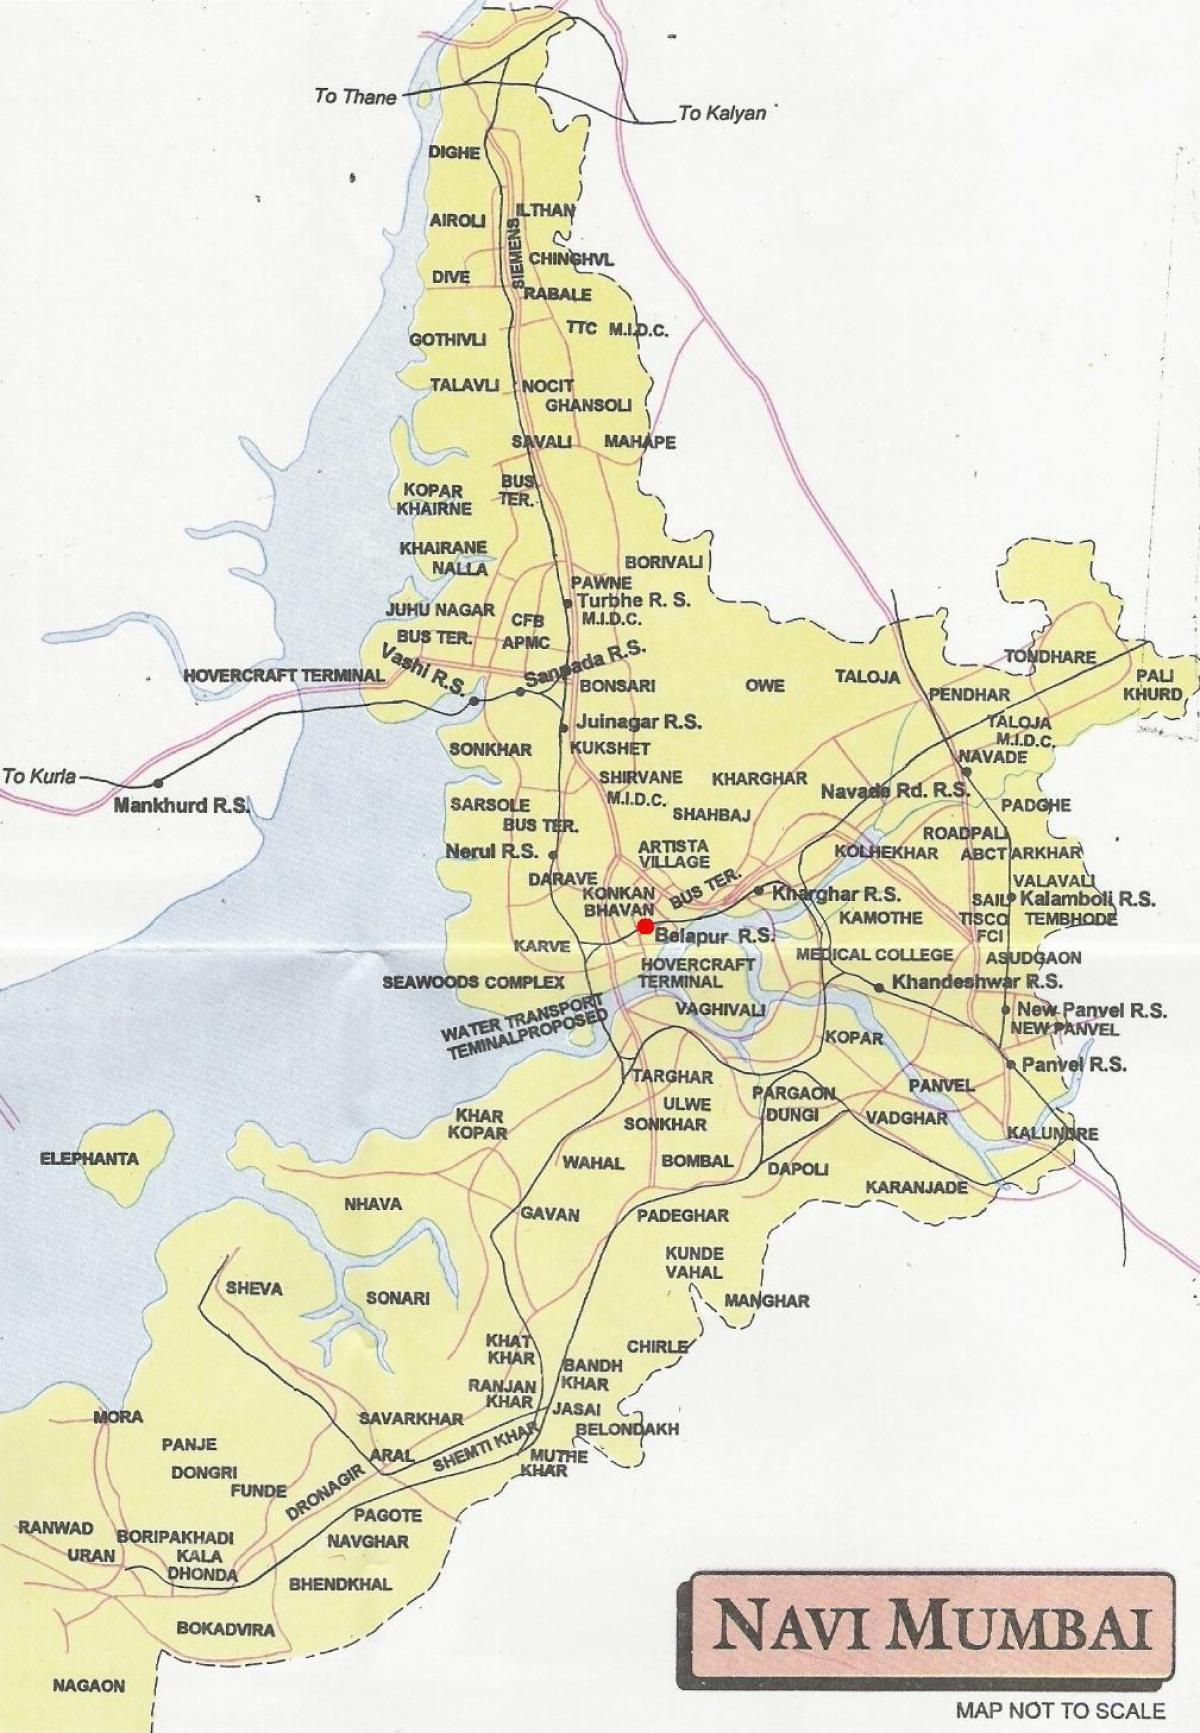 kort over navi Mumbai